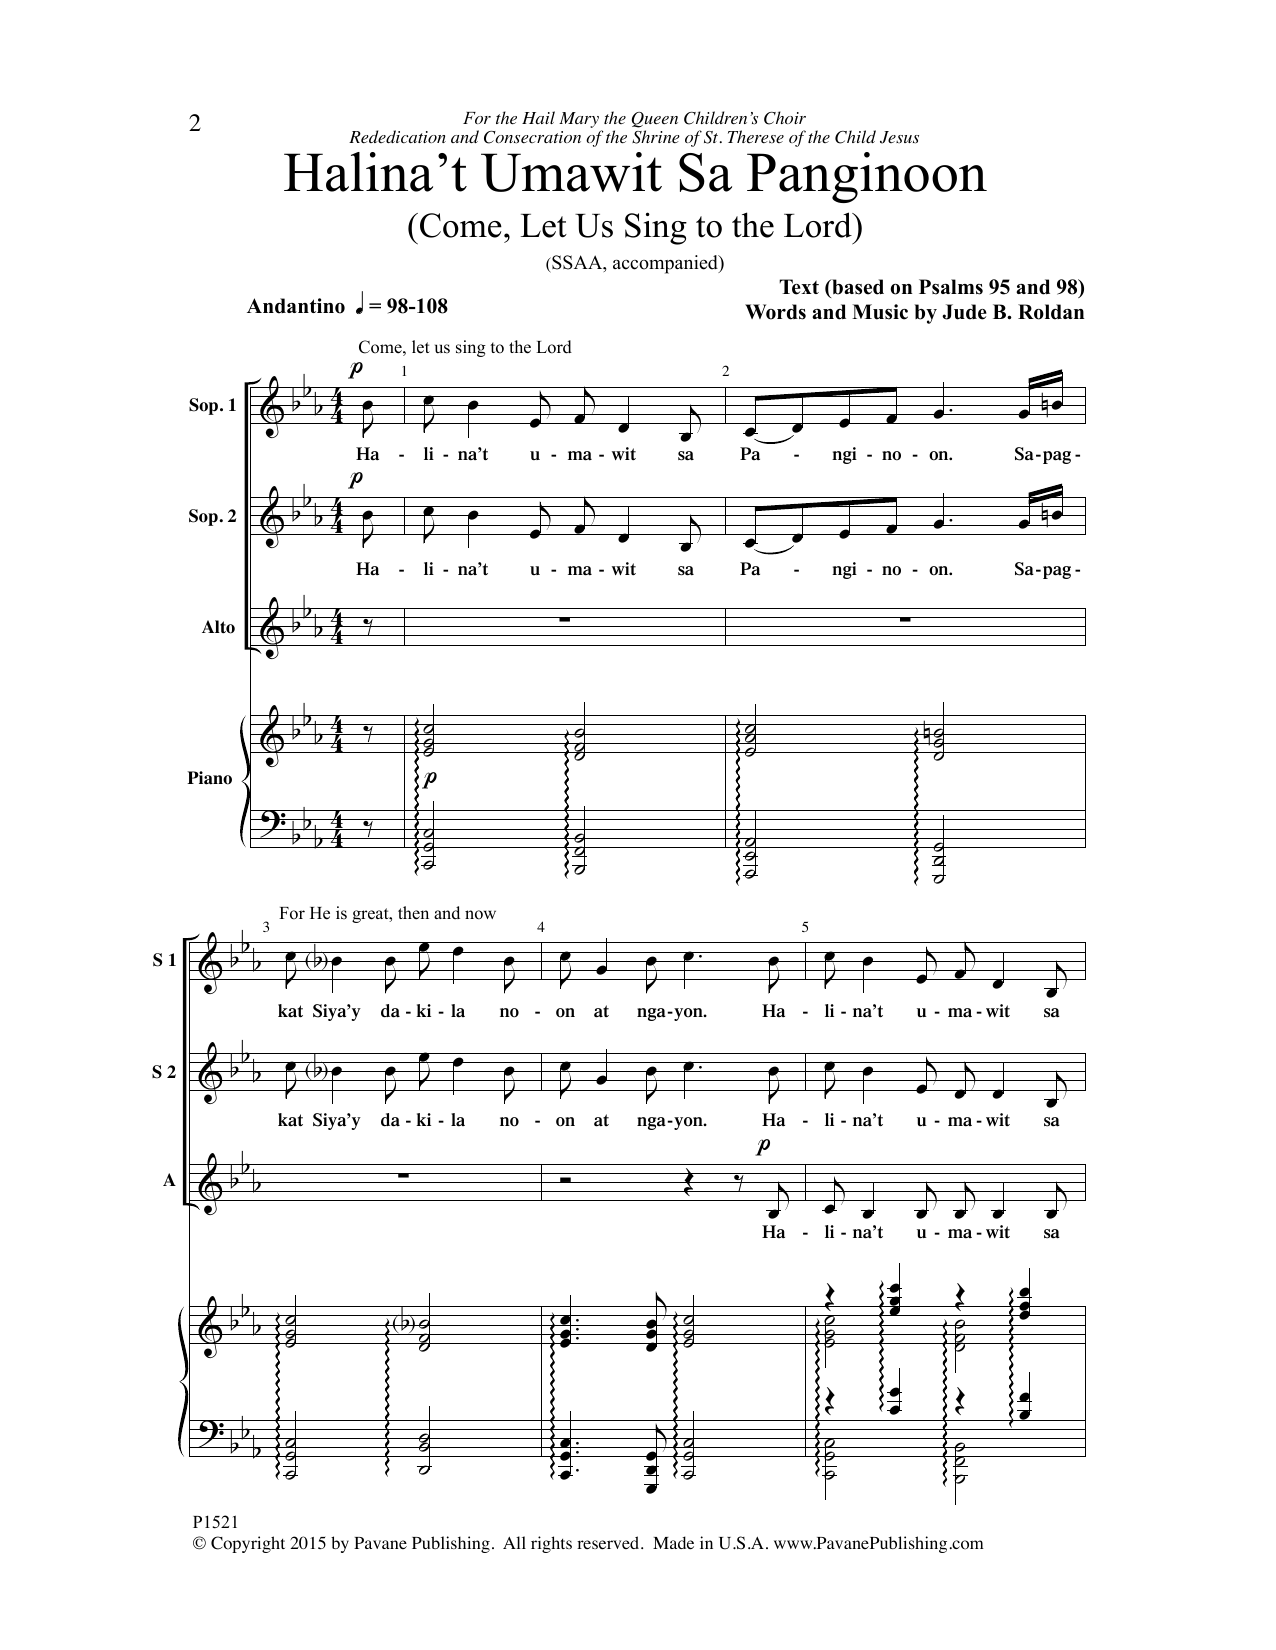 Jude B. Roldan Halina't Umawit Sa Panginoon Sheet Music Notes & Chords for Choral - Download or Print PDF